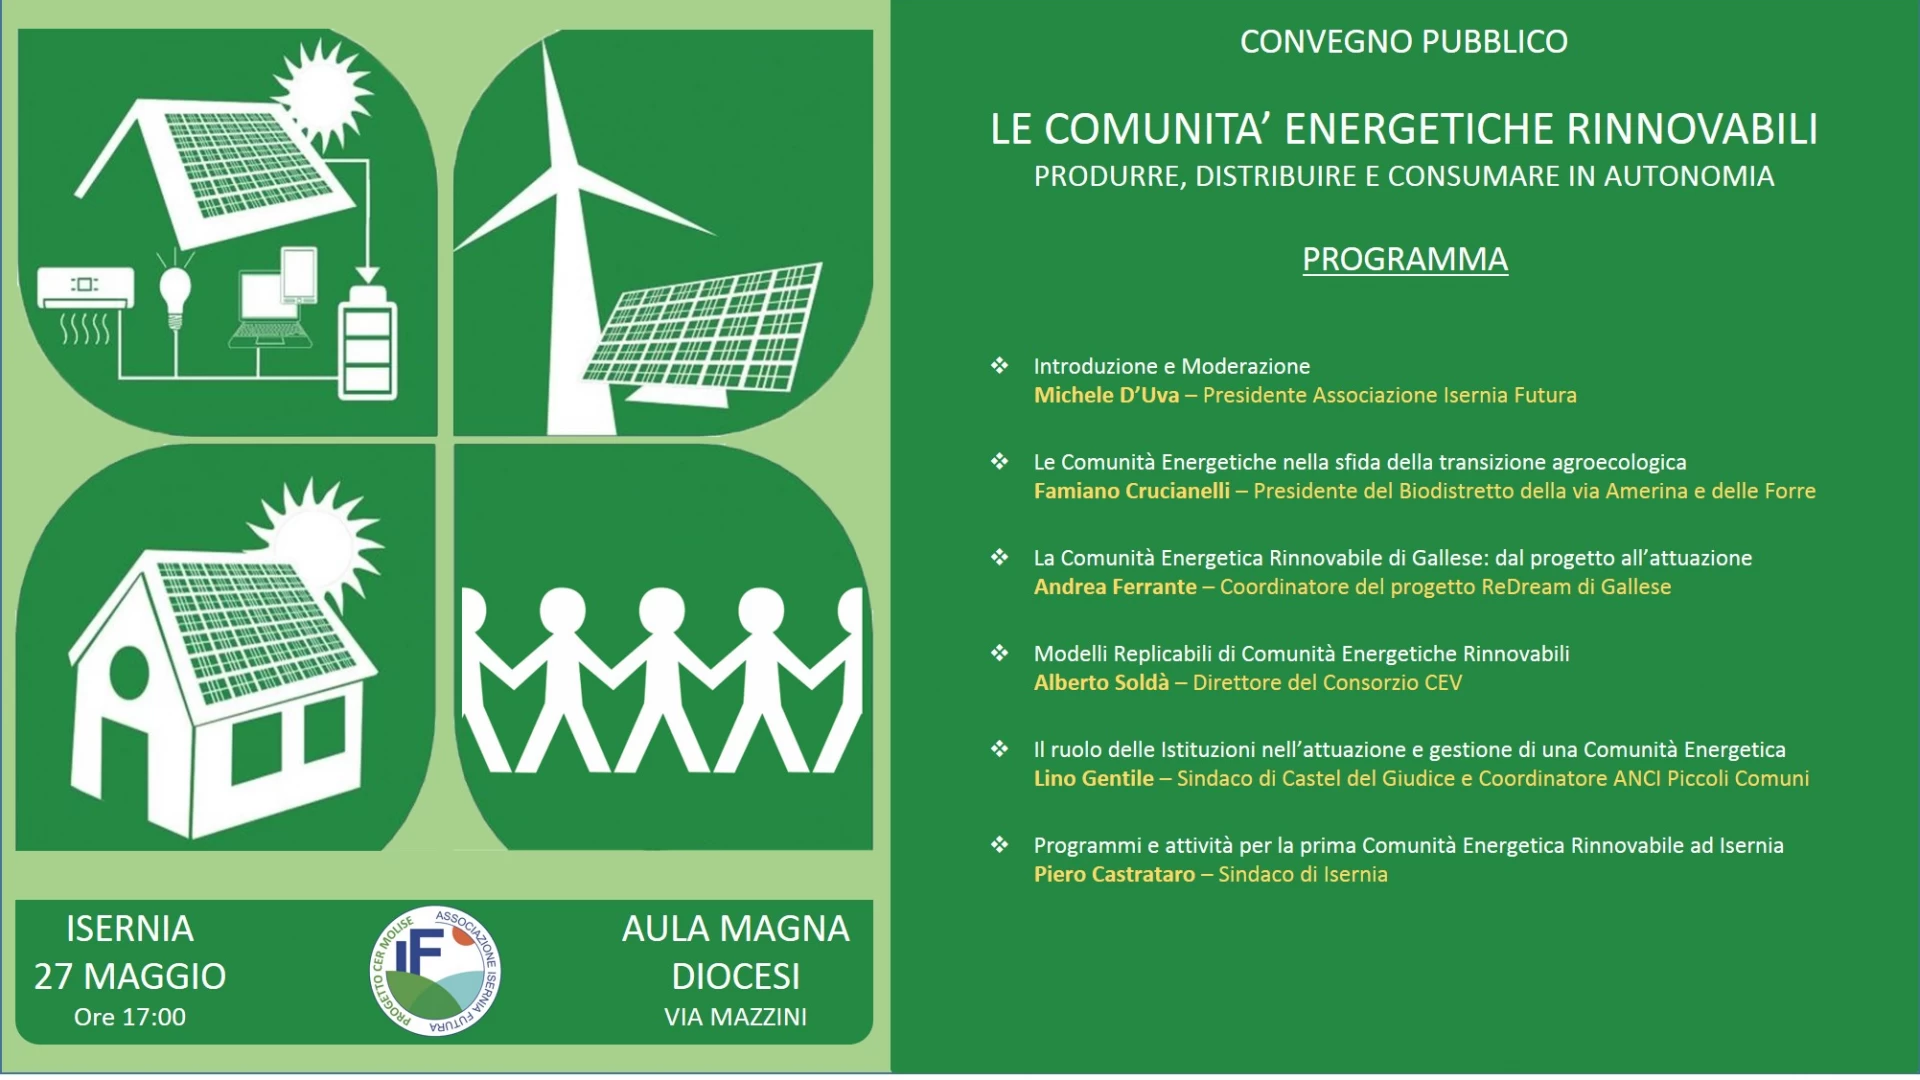 Isernia: “Le Comunità energetiche rinnovabili”. Il prossimo 27 maggio il convegno promosso dall’Associazione Isernia Futura.